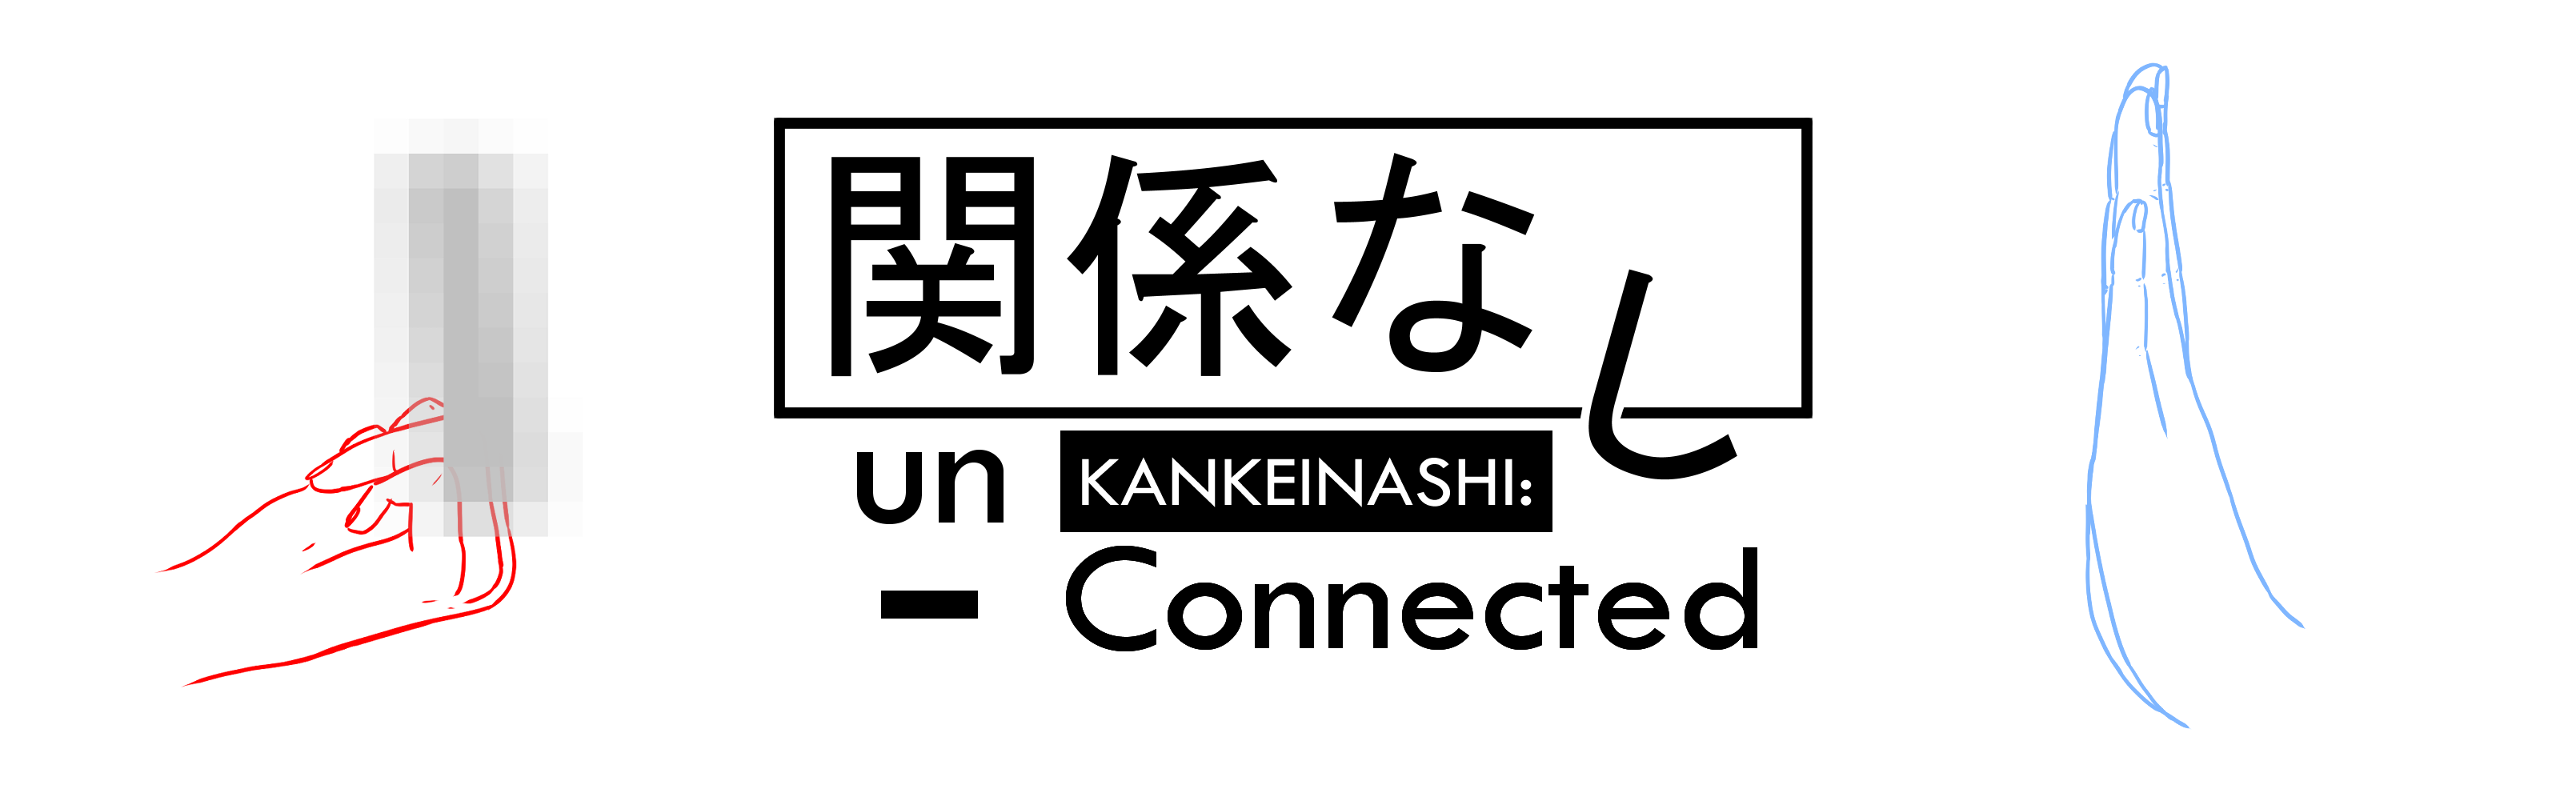 KANKEINASHI: un-Connected